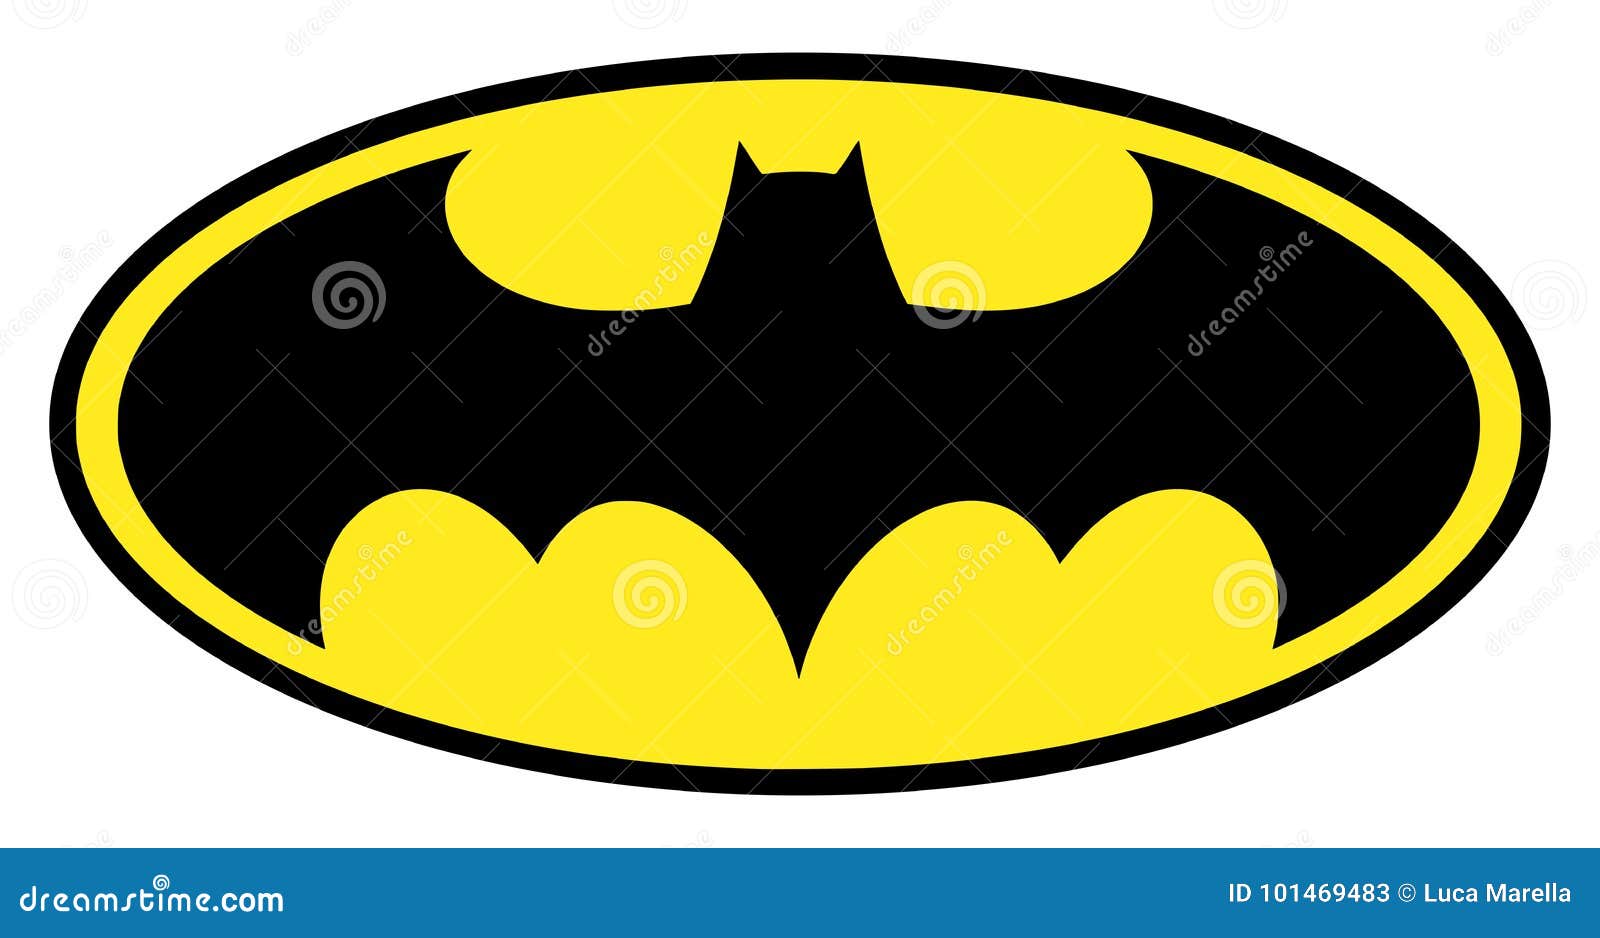 Batman Symbol Stock Illustrations – 567 Batman Symbol Stock Illustrations,  Vectors & Clipart - Dreamstime